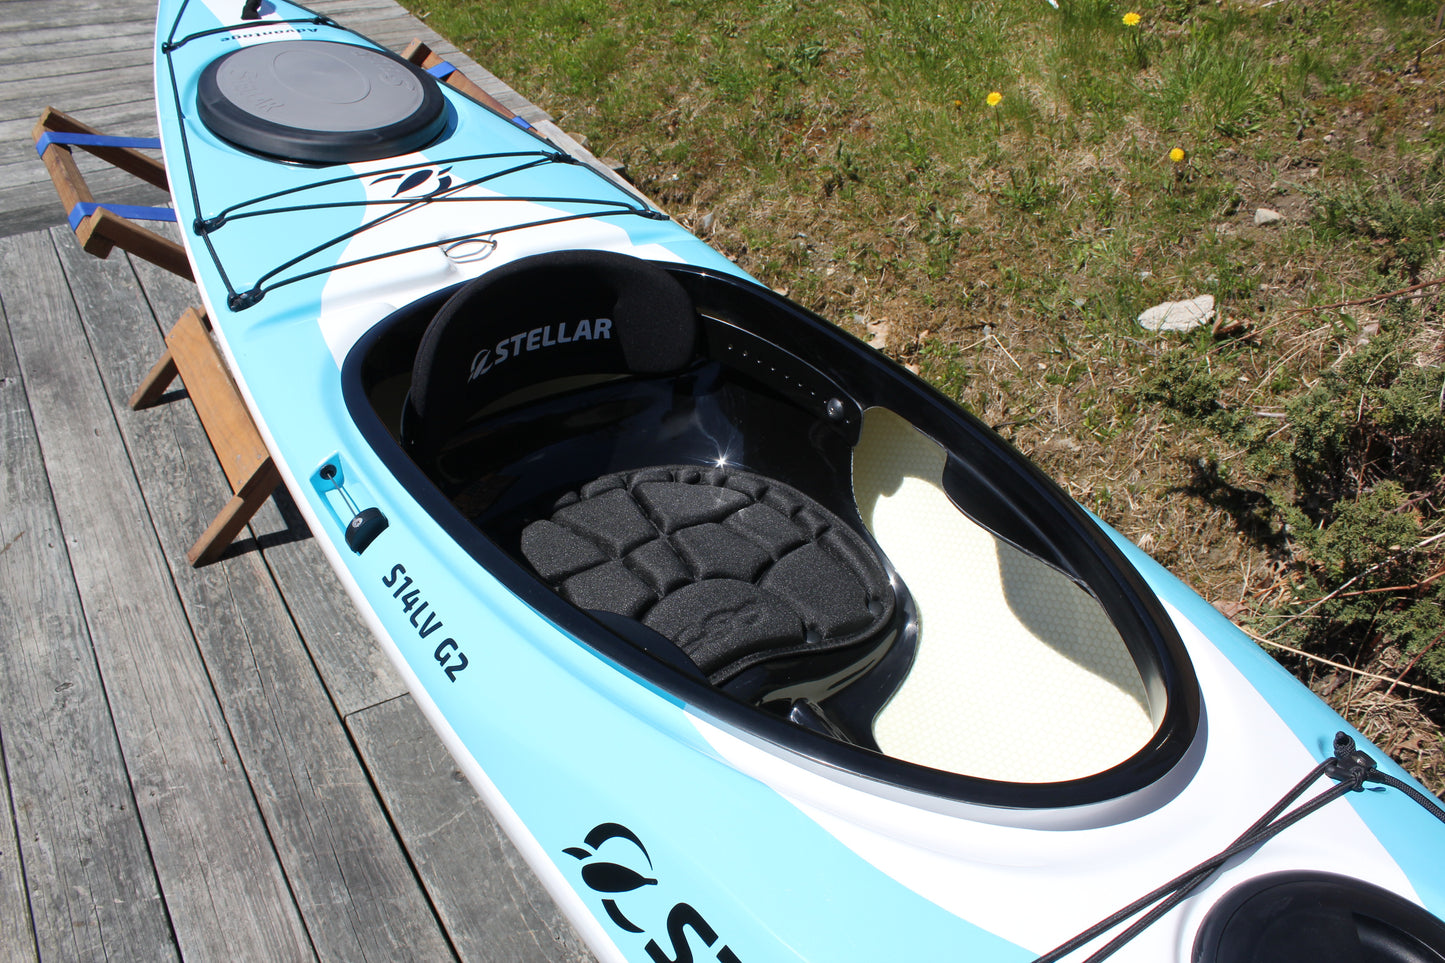 S14 LV G2 Advantage Kayak